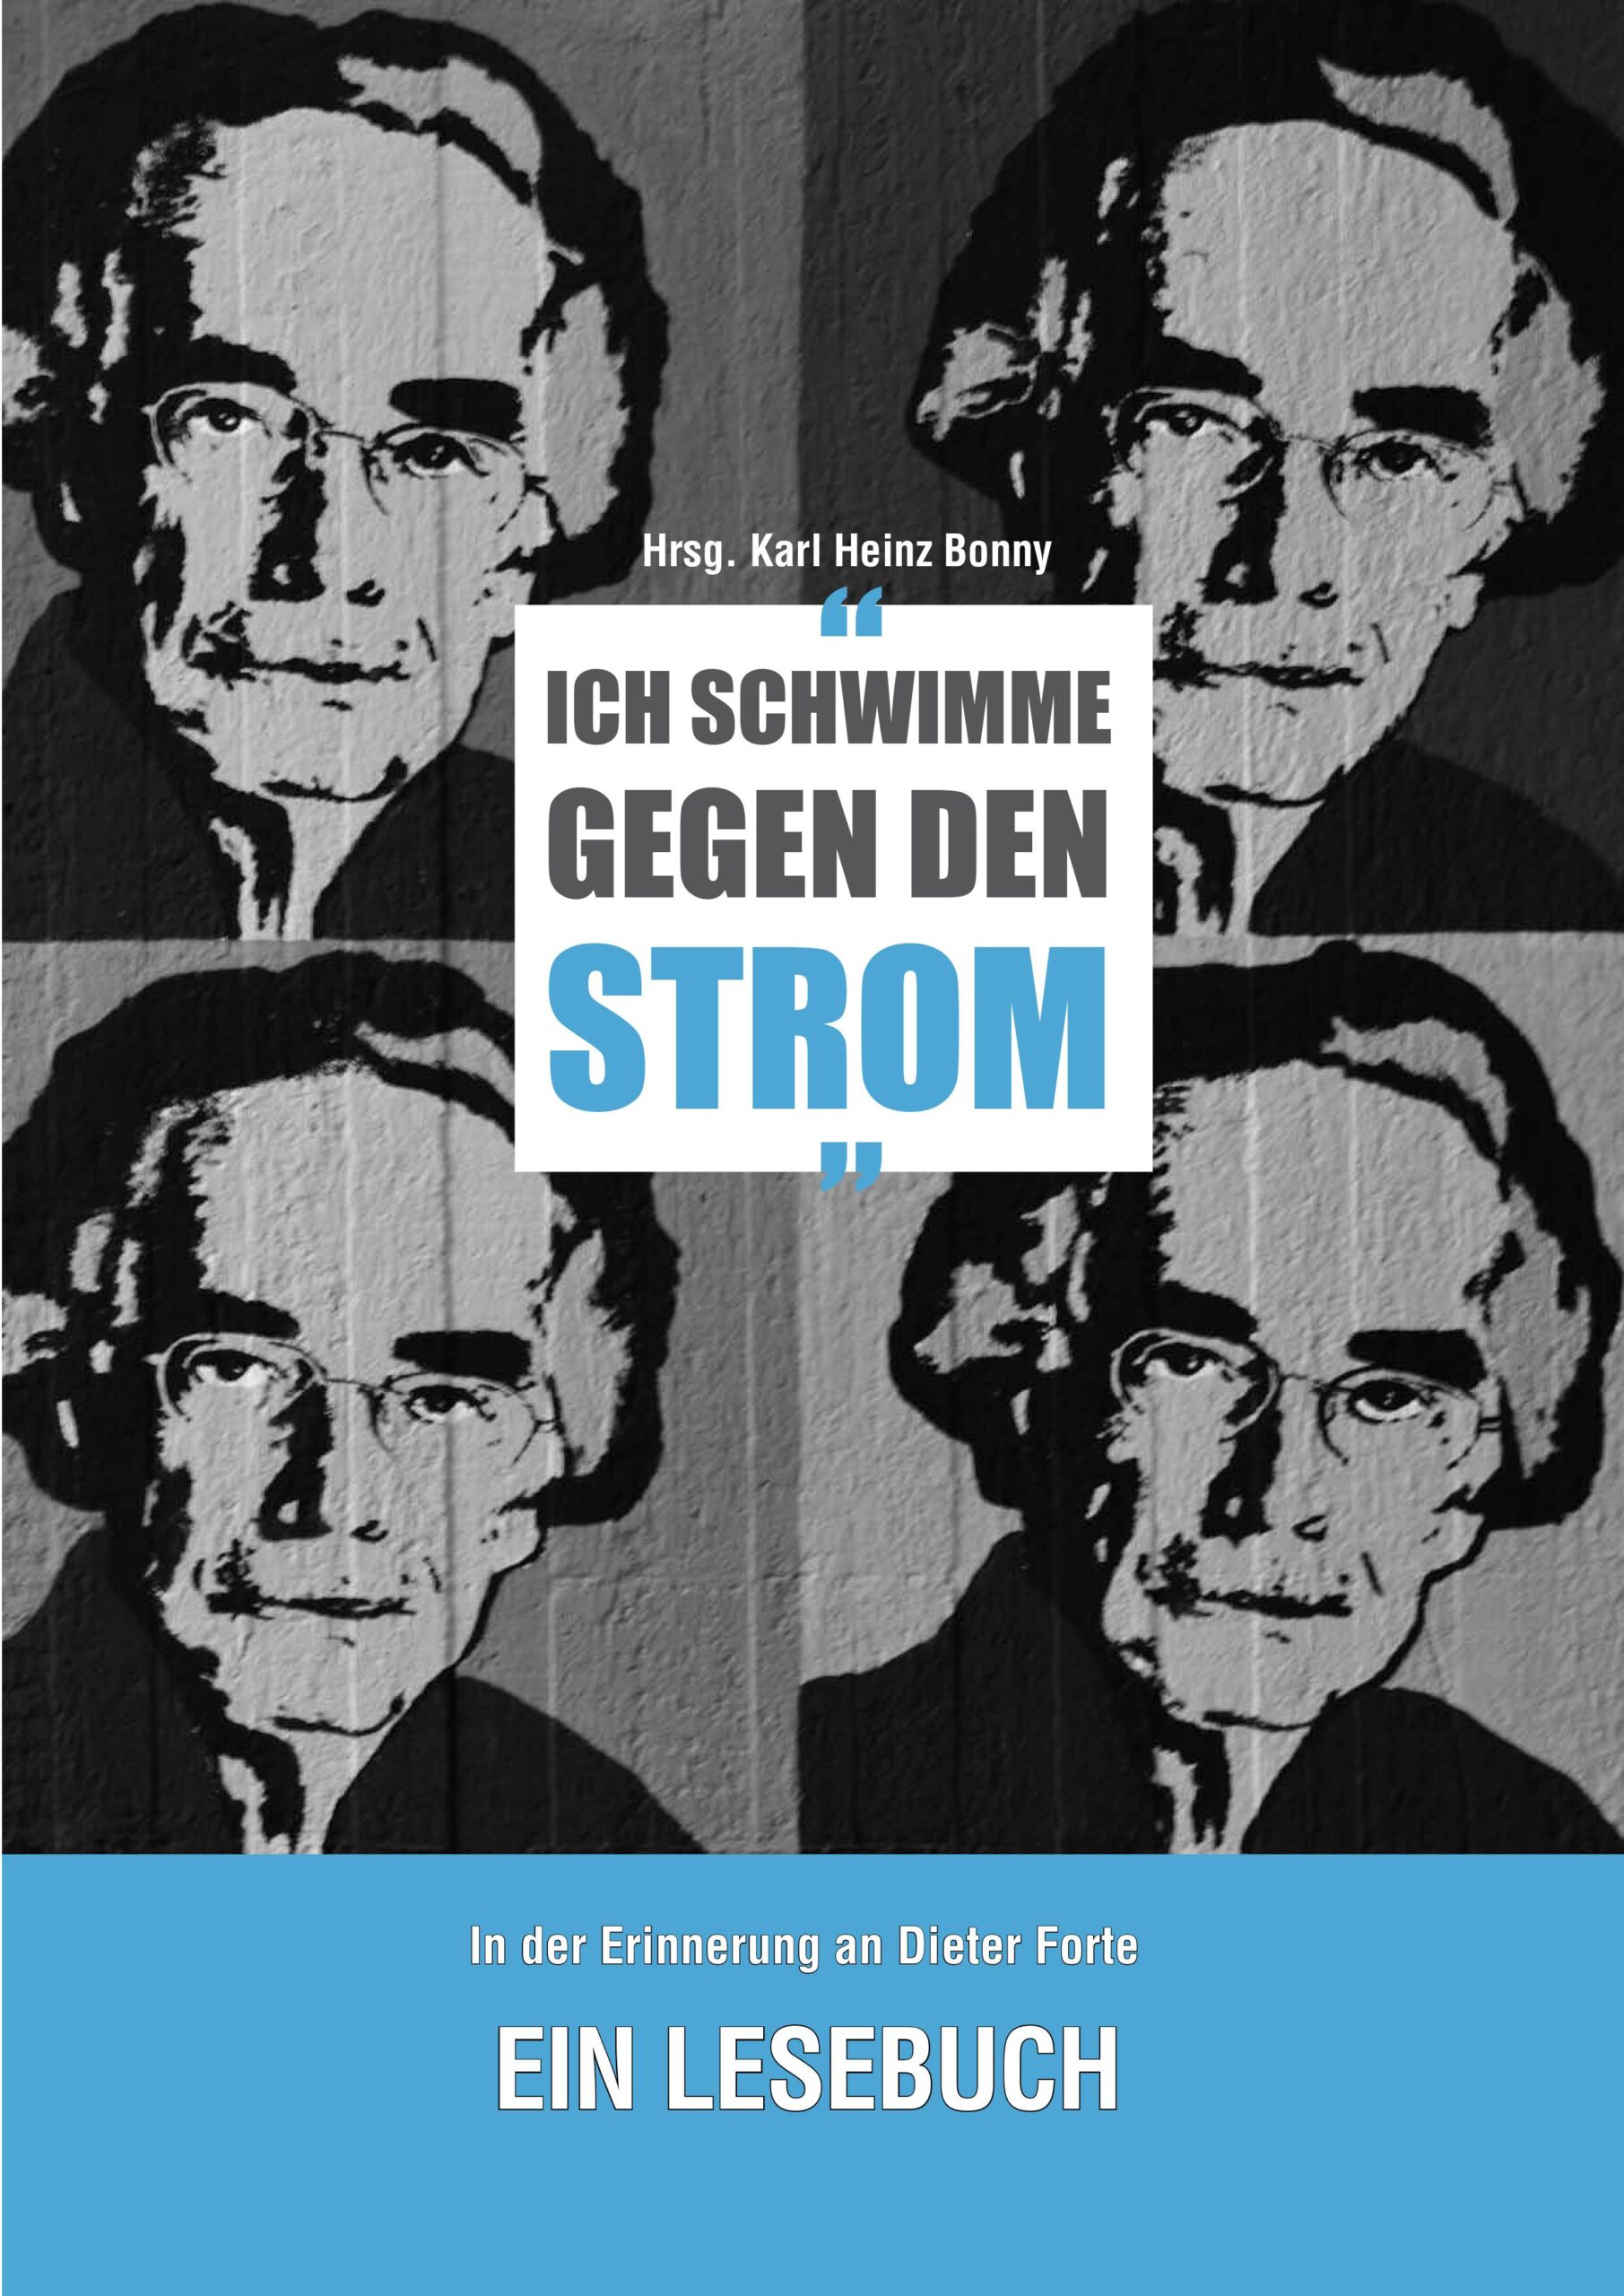 Karl Heinz Bonny (Hrsg): Ich schwimme gegen den Strom. Ein Lesebuch zur Erinnerung an Dieter Forte. BoD Norderstedt 2020, 158 Seiten, 18,80 Euro